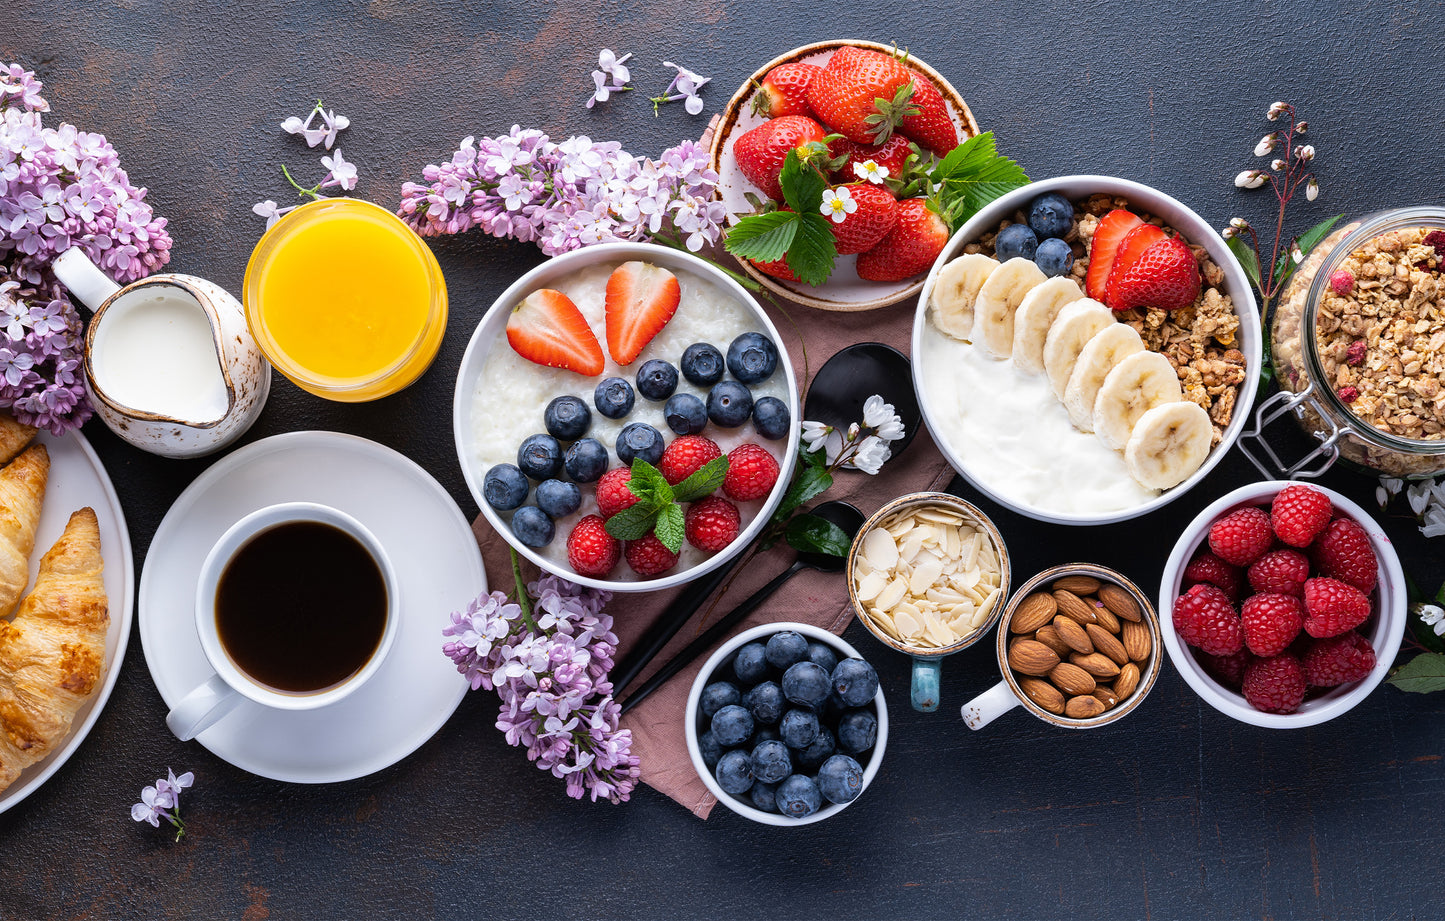 Le petit-déjeuner, le repas le plus important de la journée ?